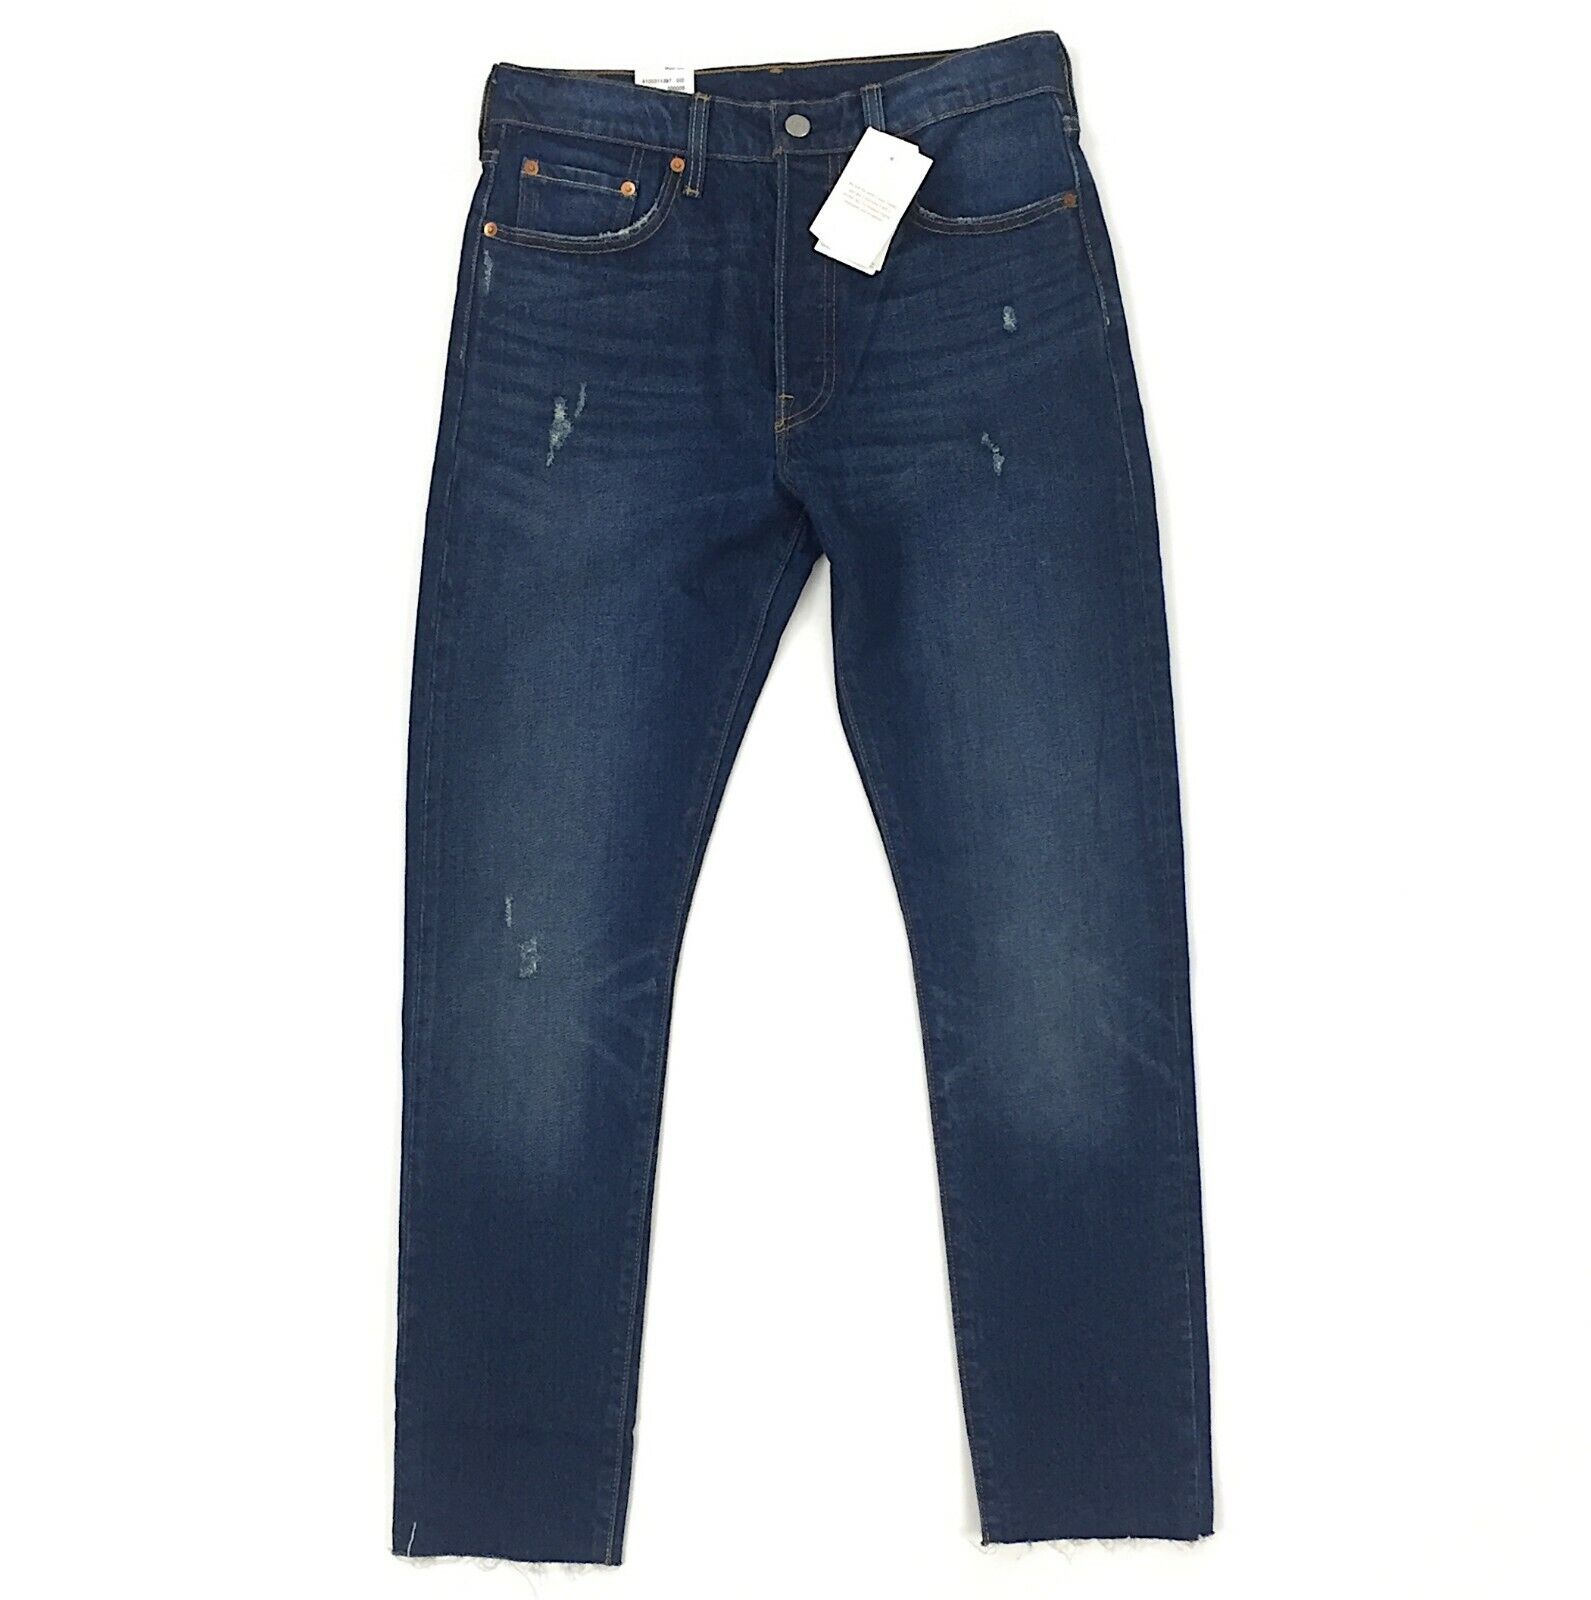 Новые джинсы-скинни Levis 501 для женщин Stretch Fit Blue Denim Cut Fray 501s S